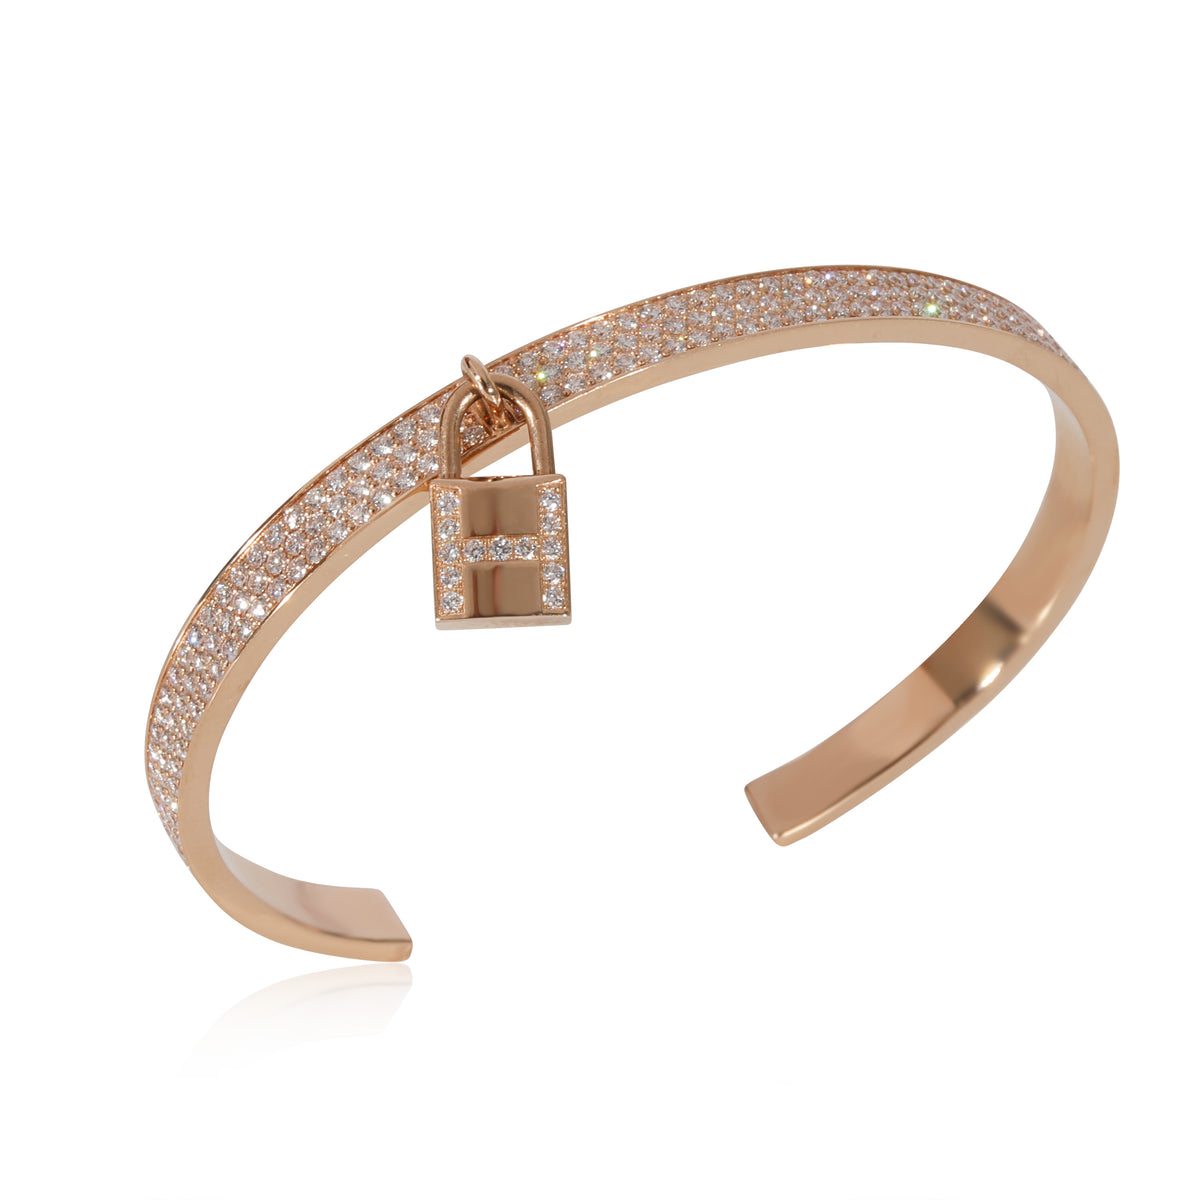 Hermes Kelly Cadenas Diamond Bracelet Small Model in 18K Rose Gold 2.49 CTW